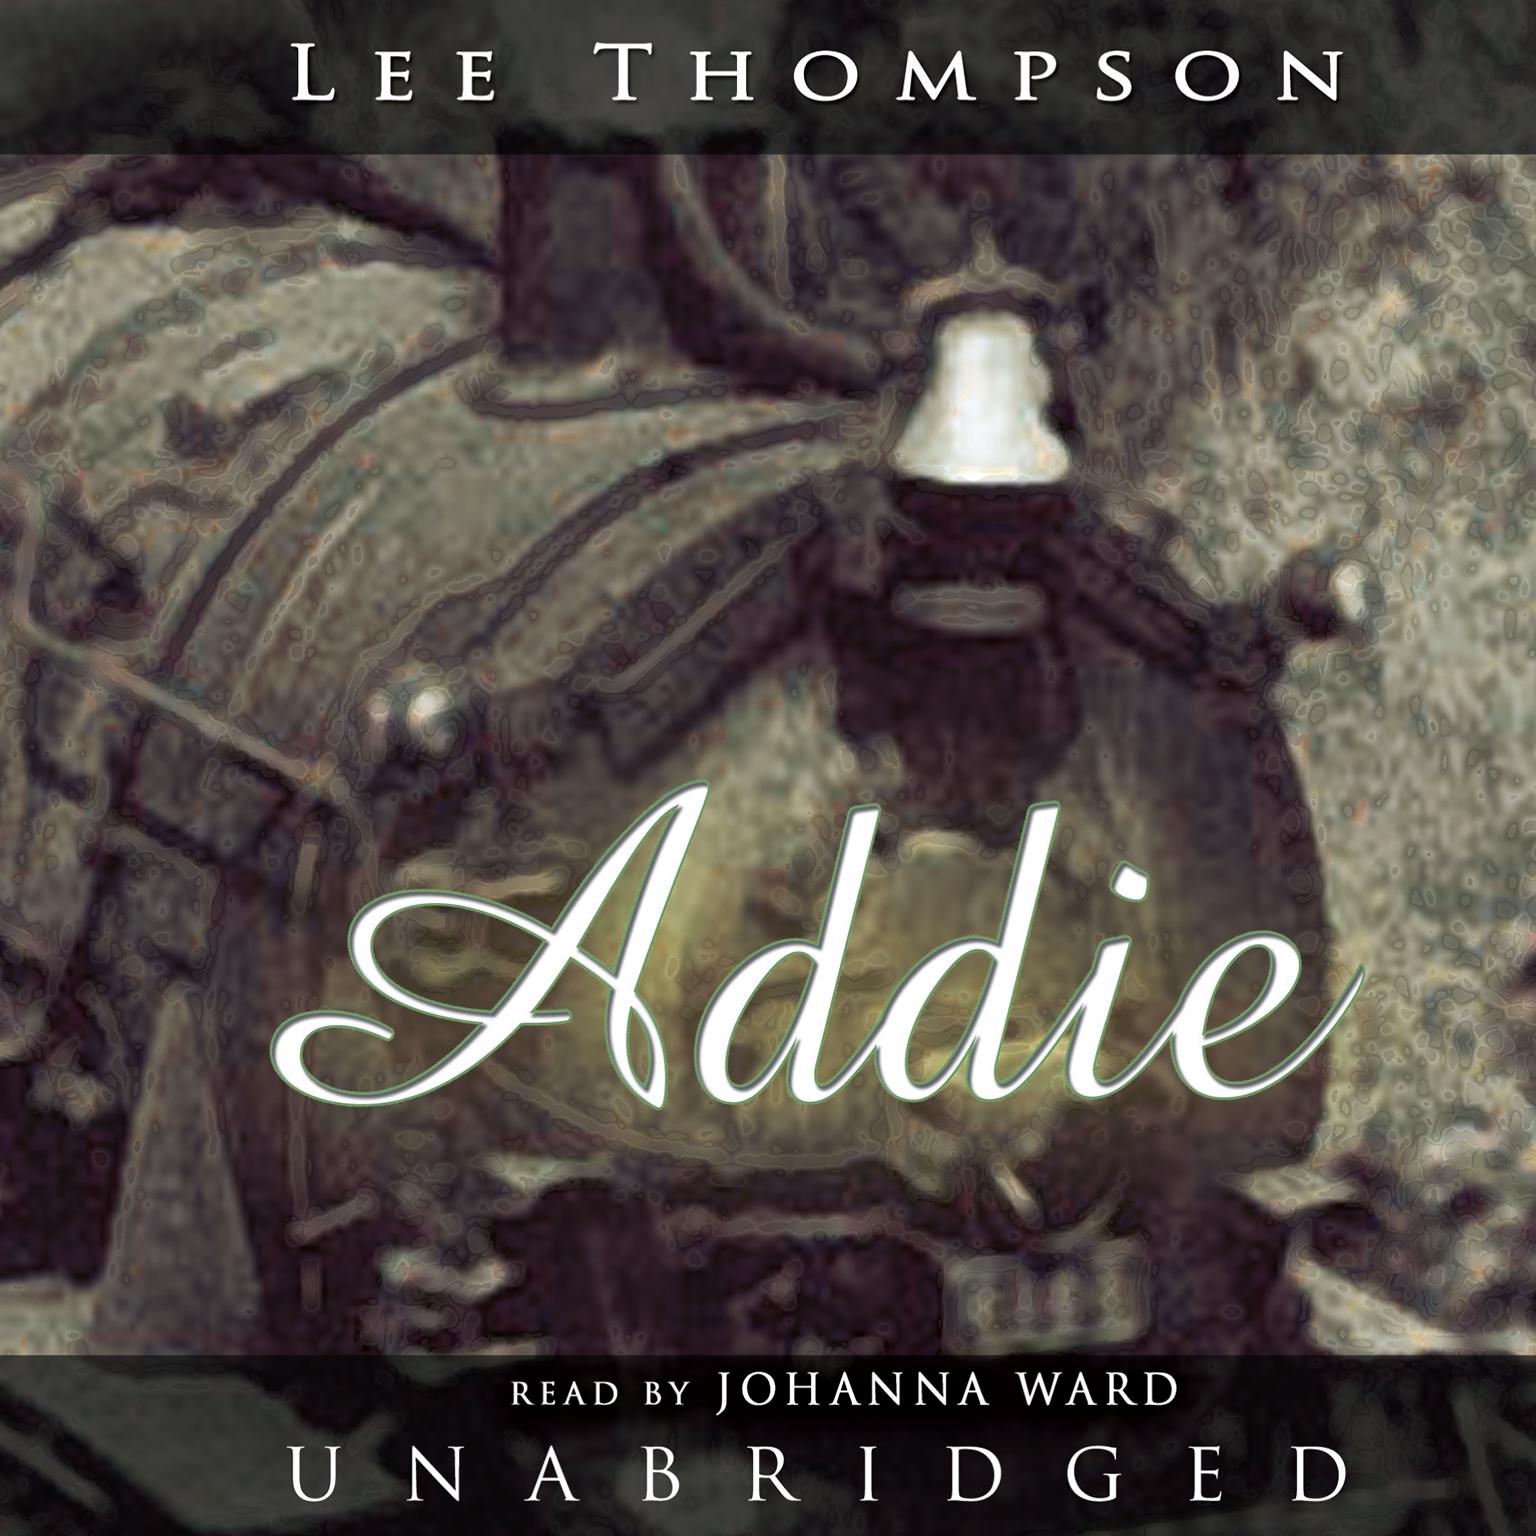 Addie Audiobook, by Lee Thompson